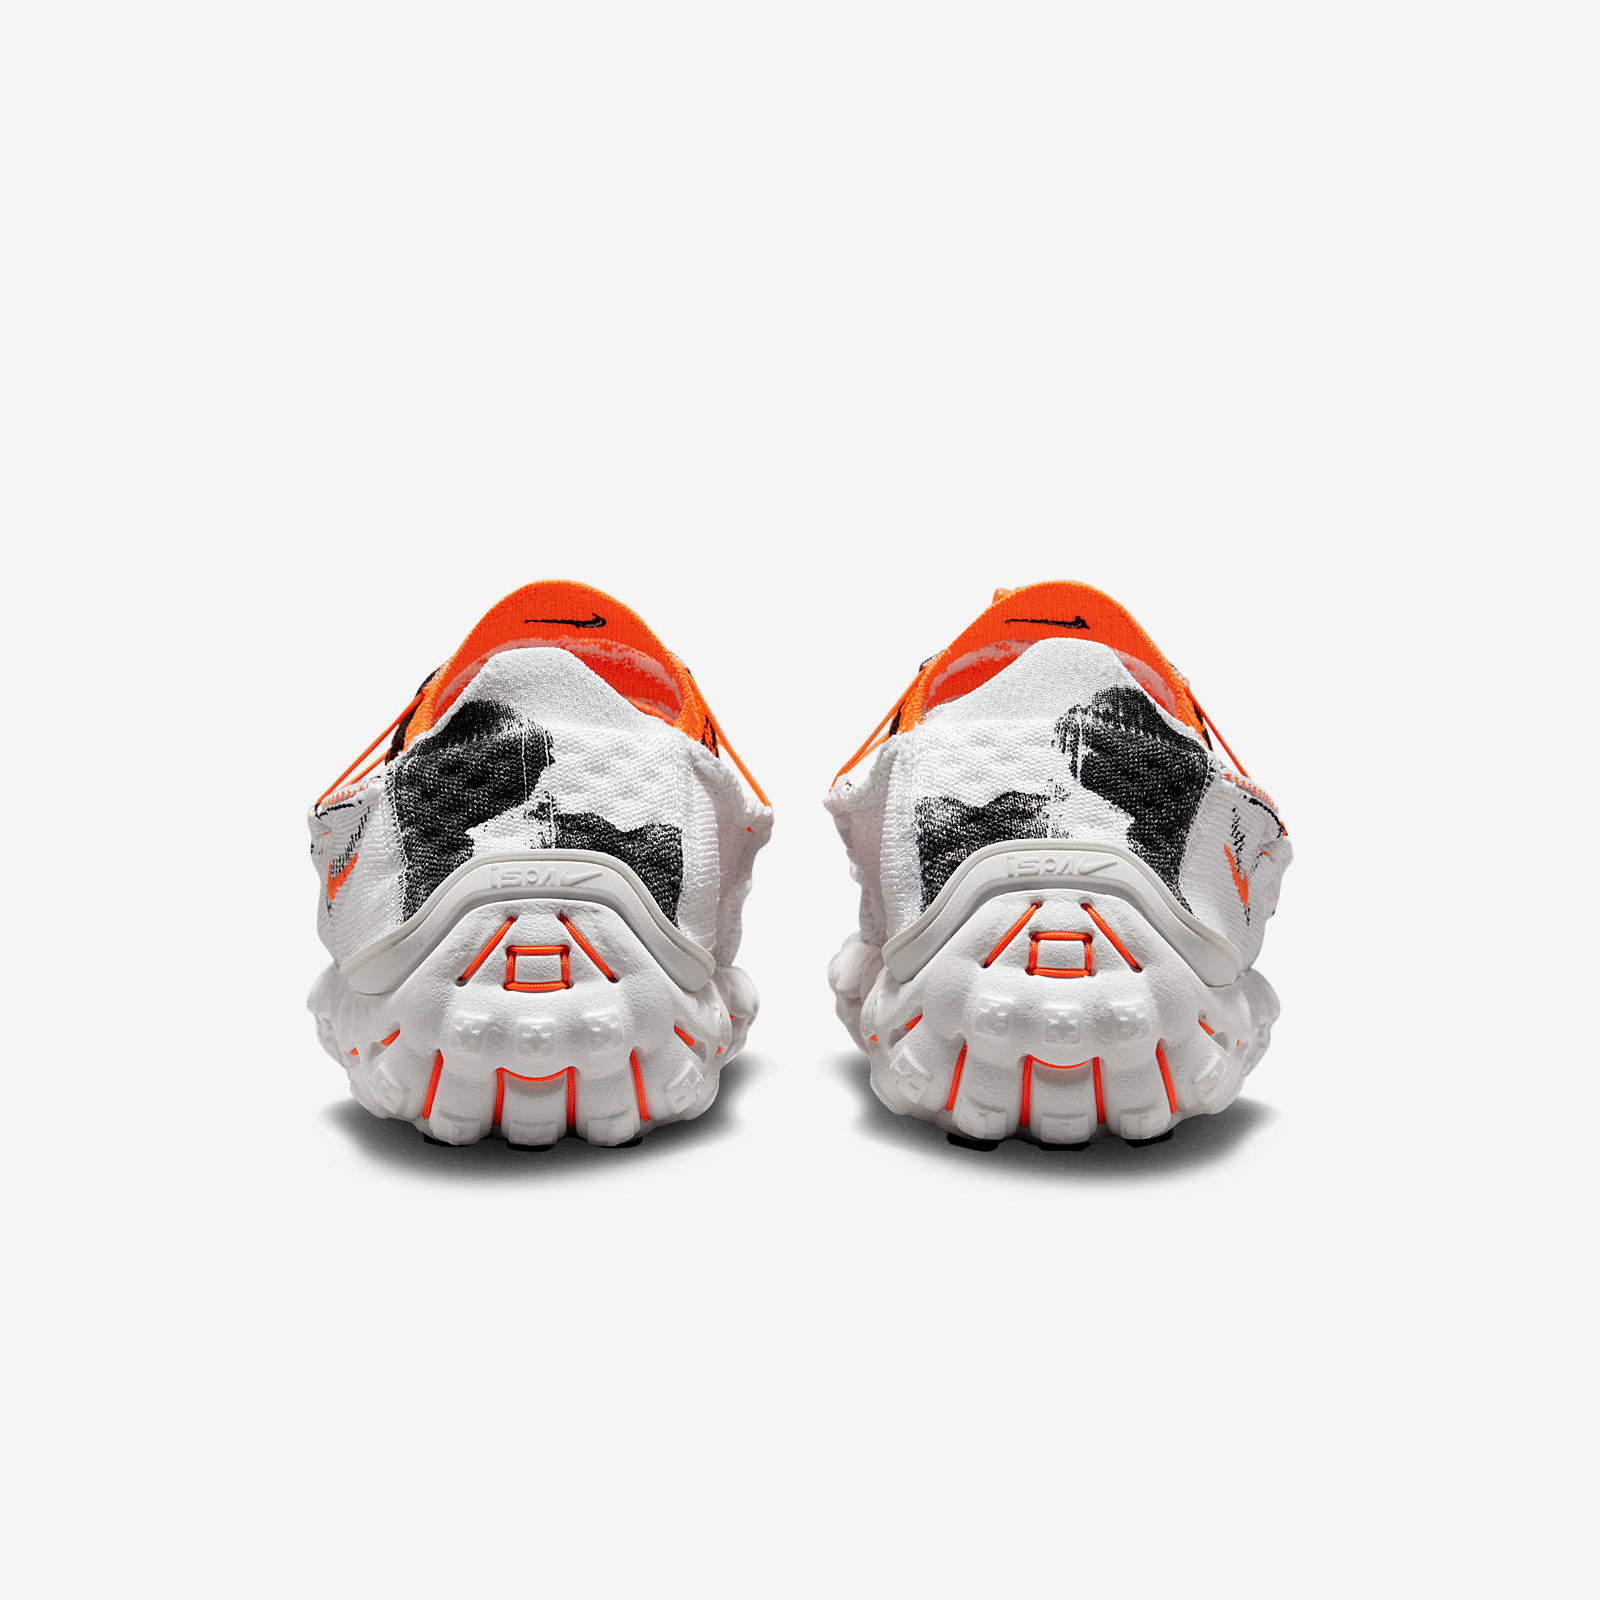 Nike ISPA MindBody
White / Total Orange